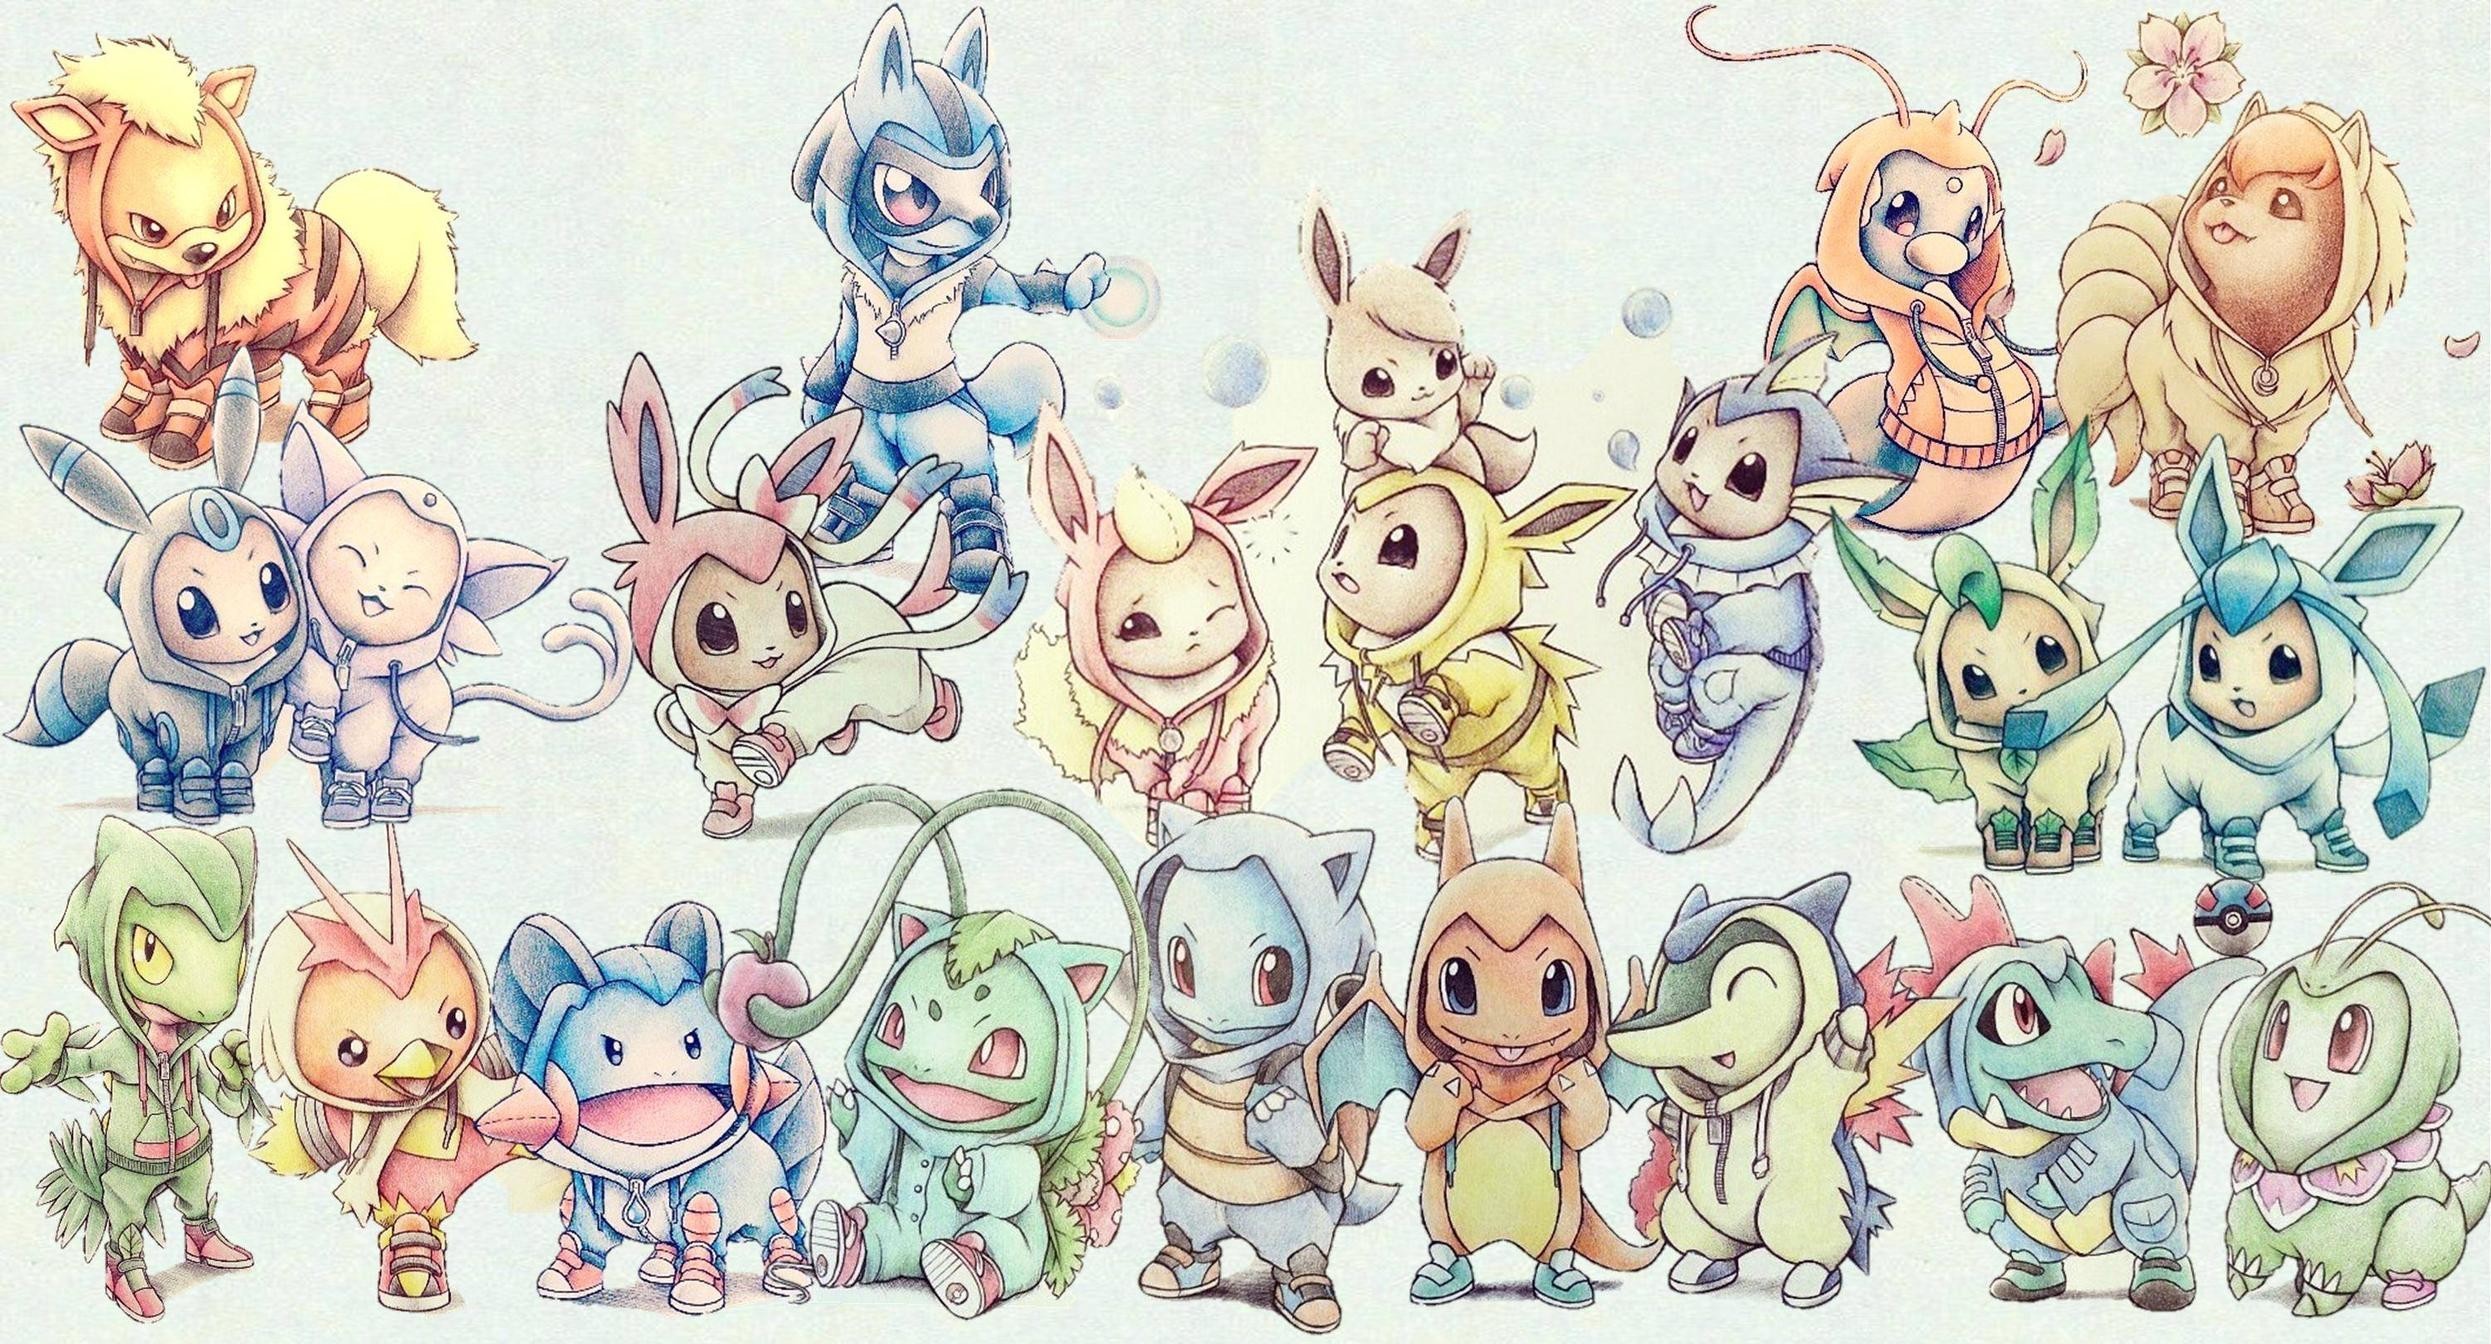 original starter pokemon wallpaper